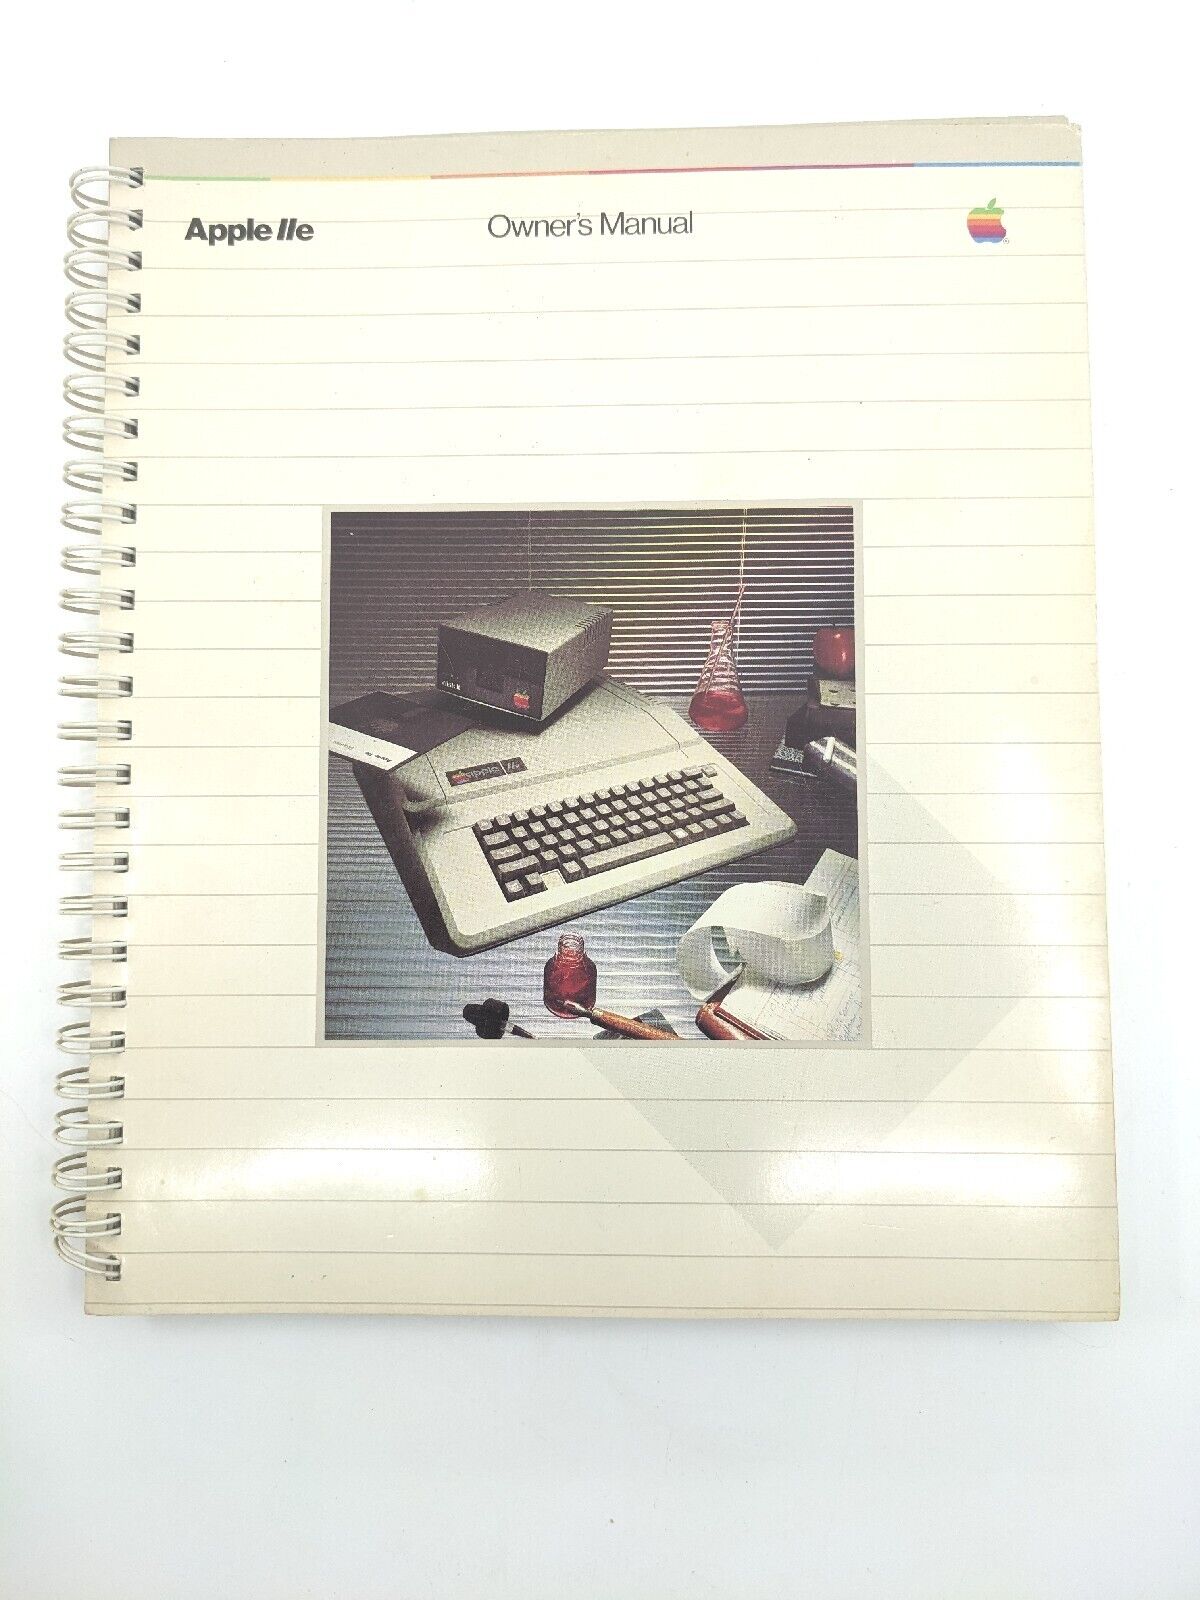 Vintage Original Apple IIe Computer Owners Manual, Very Nice, Clean. Complete